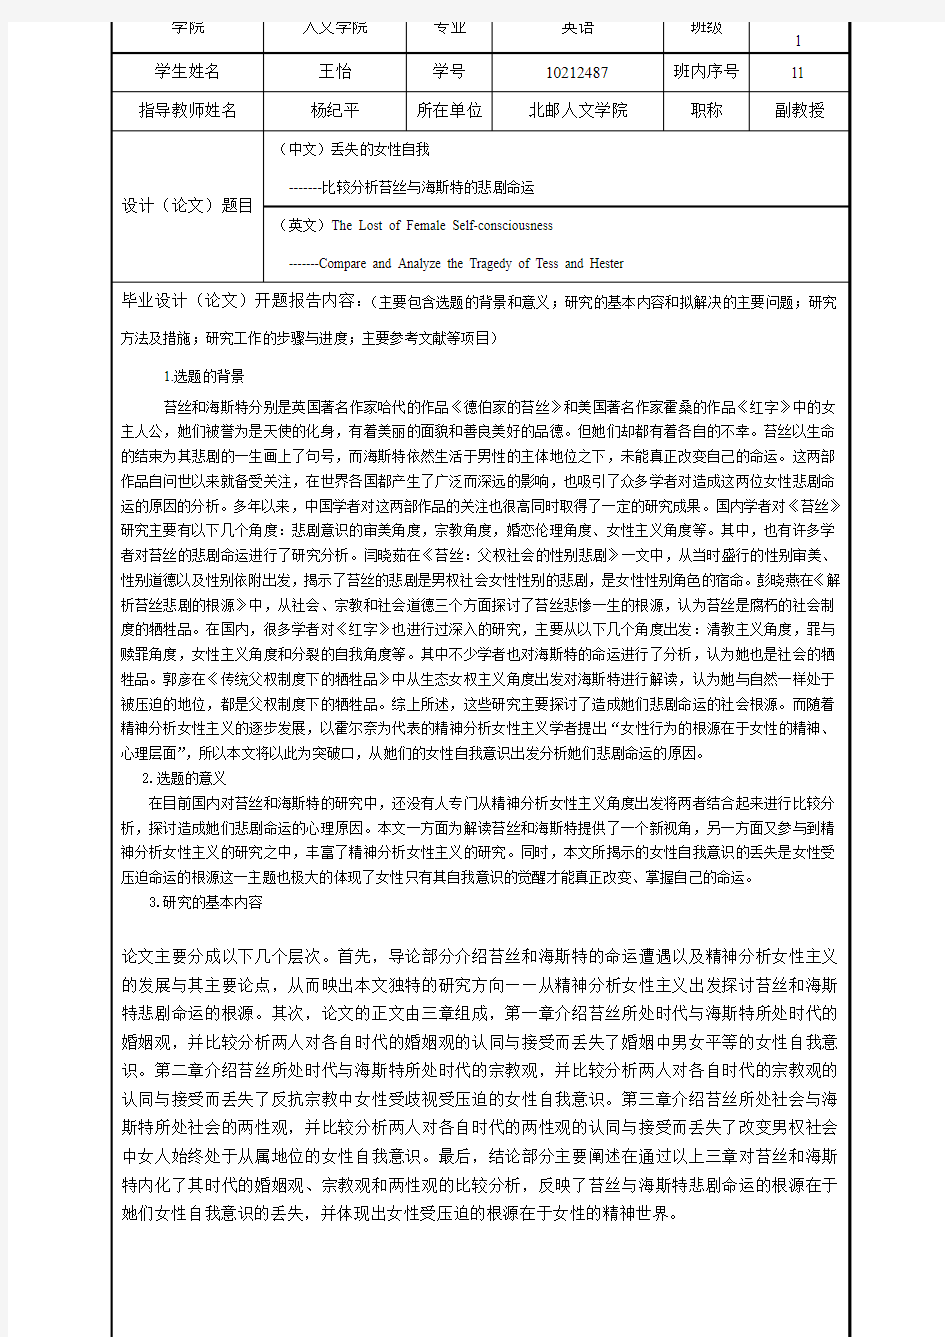 北京邮电大学本科毕业设计(论文)开题报告